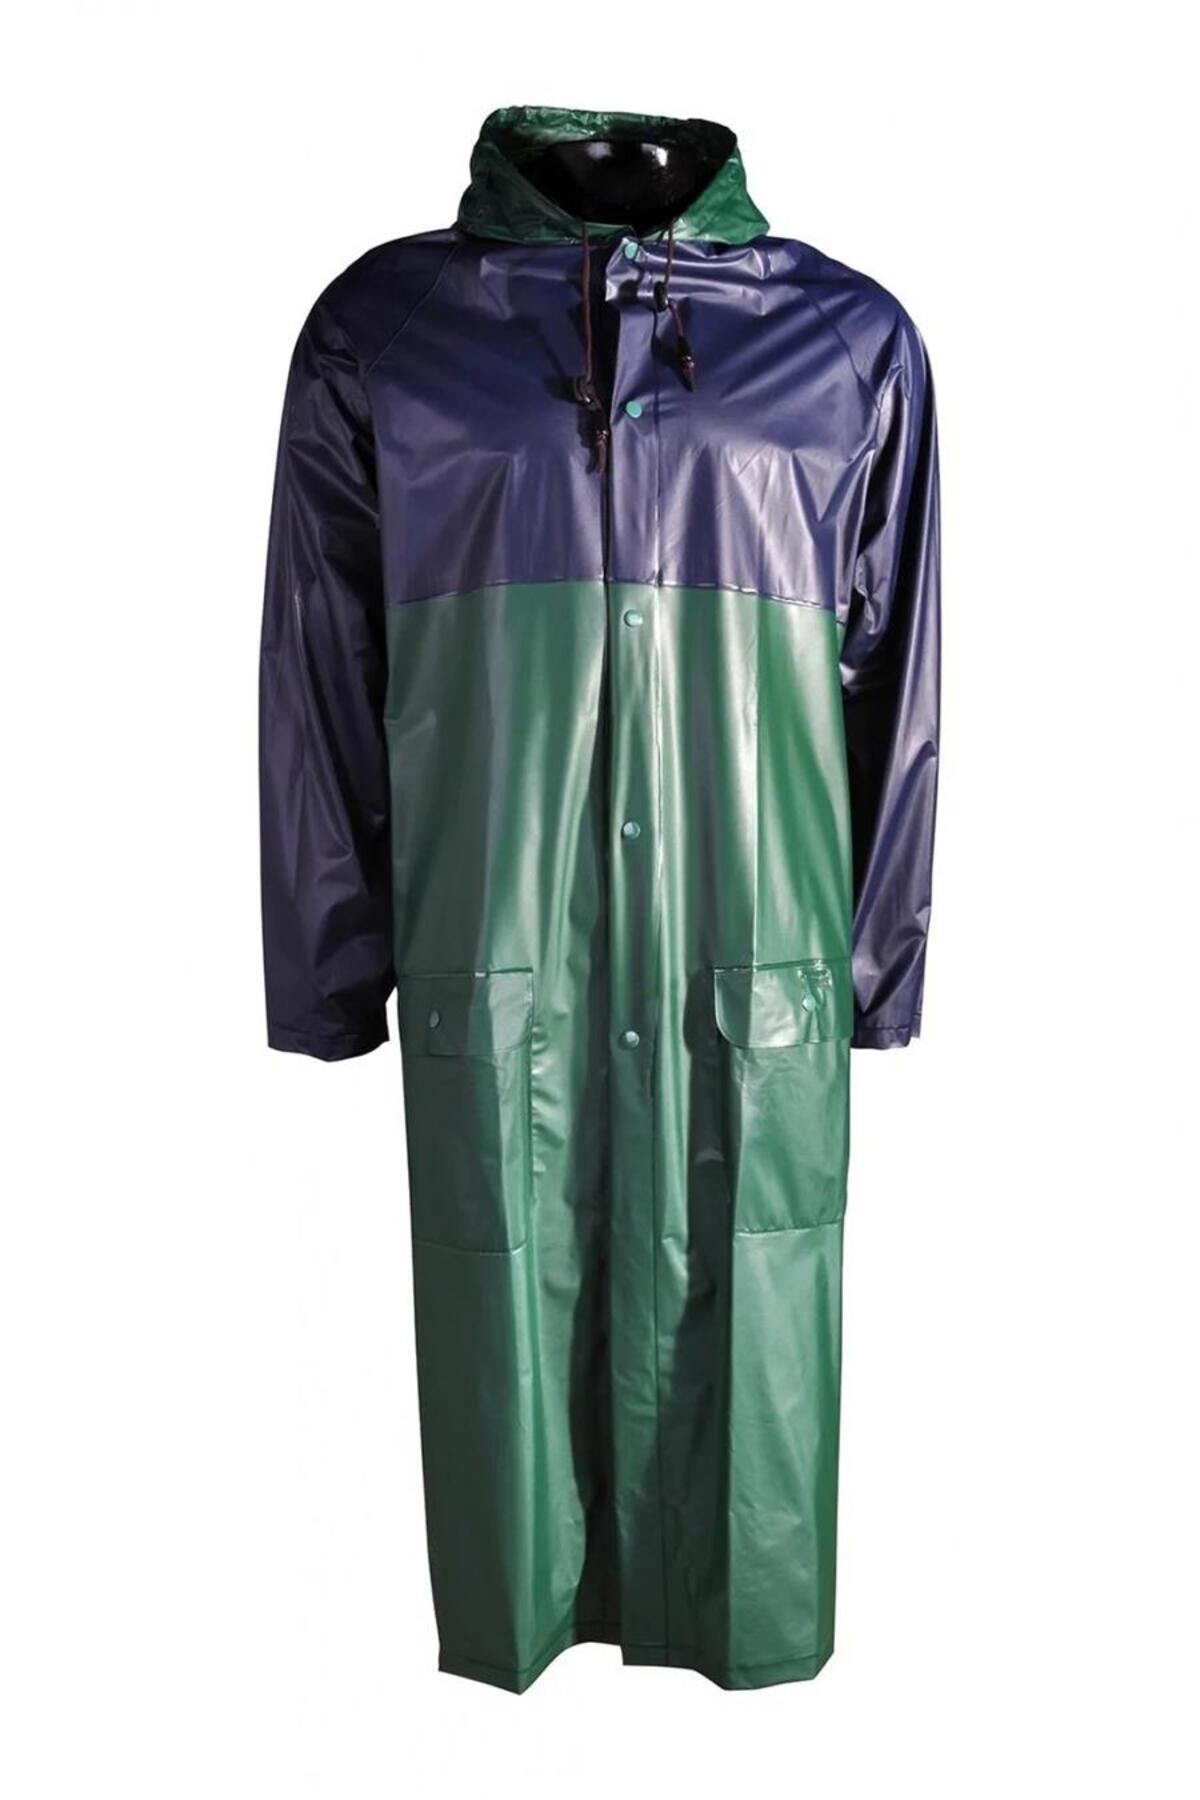 Freecamp Raincoat 0.12mm Uzun Yağmurluk Mavi/yeşil-l